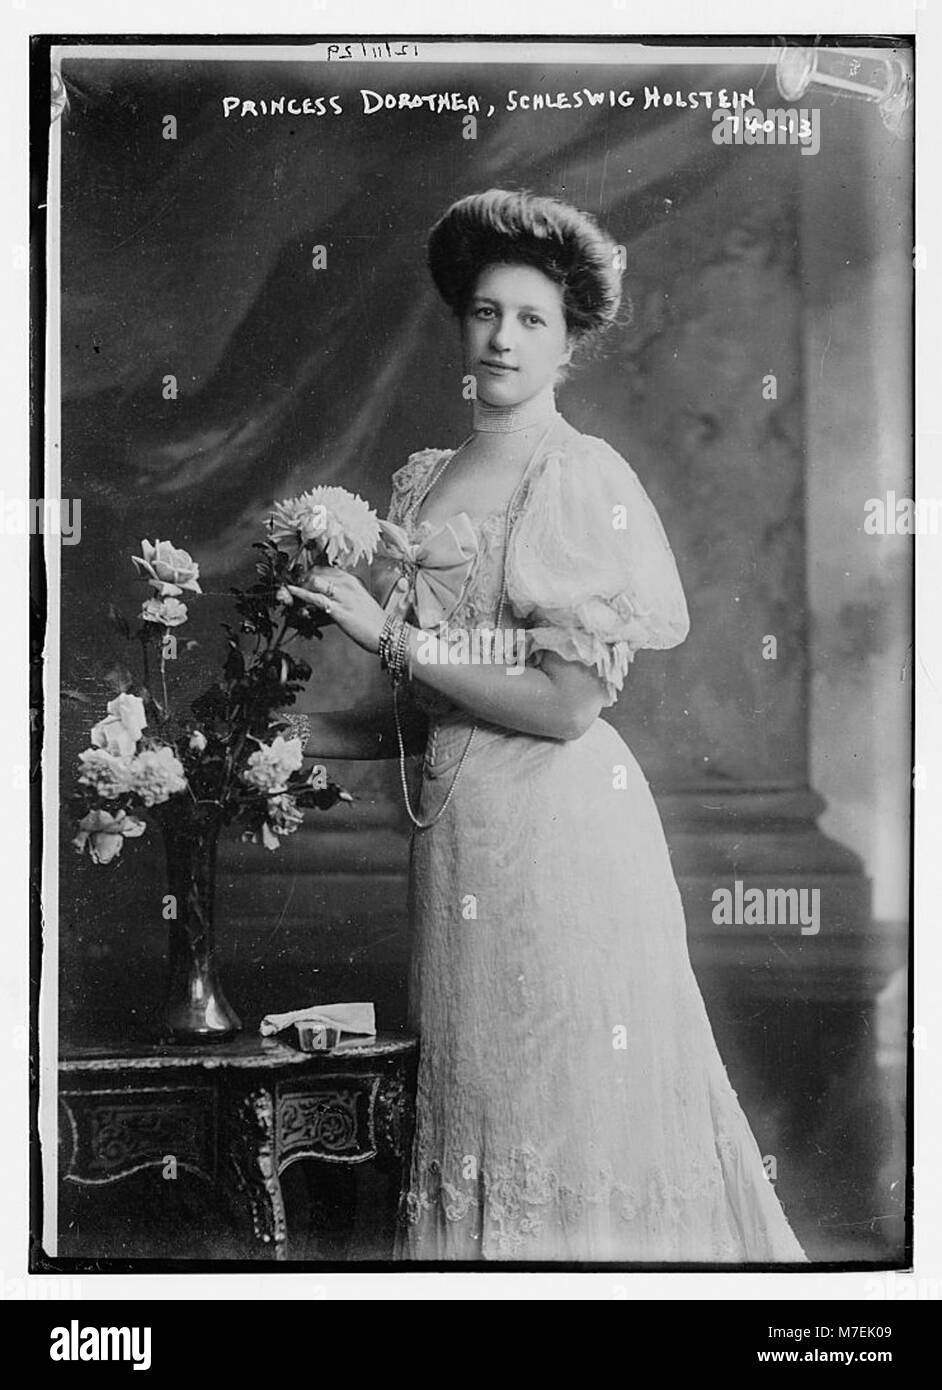 La princesse Dorothea, Schleswig Holstein, debout par table sur laquelle il y a un vase de fleurs RCAC2014683580 Banque D'Images